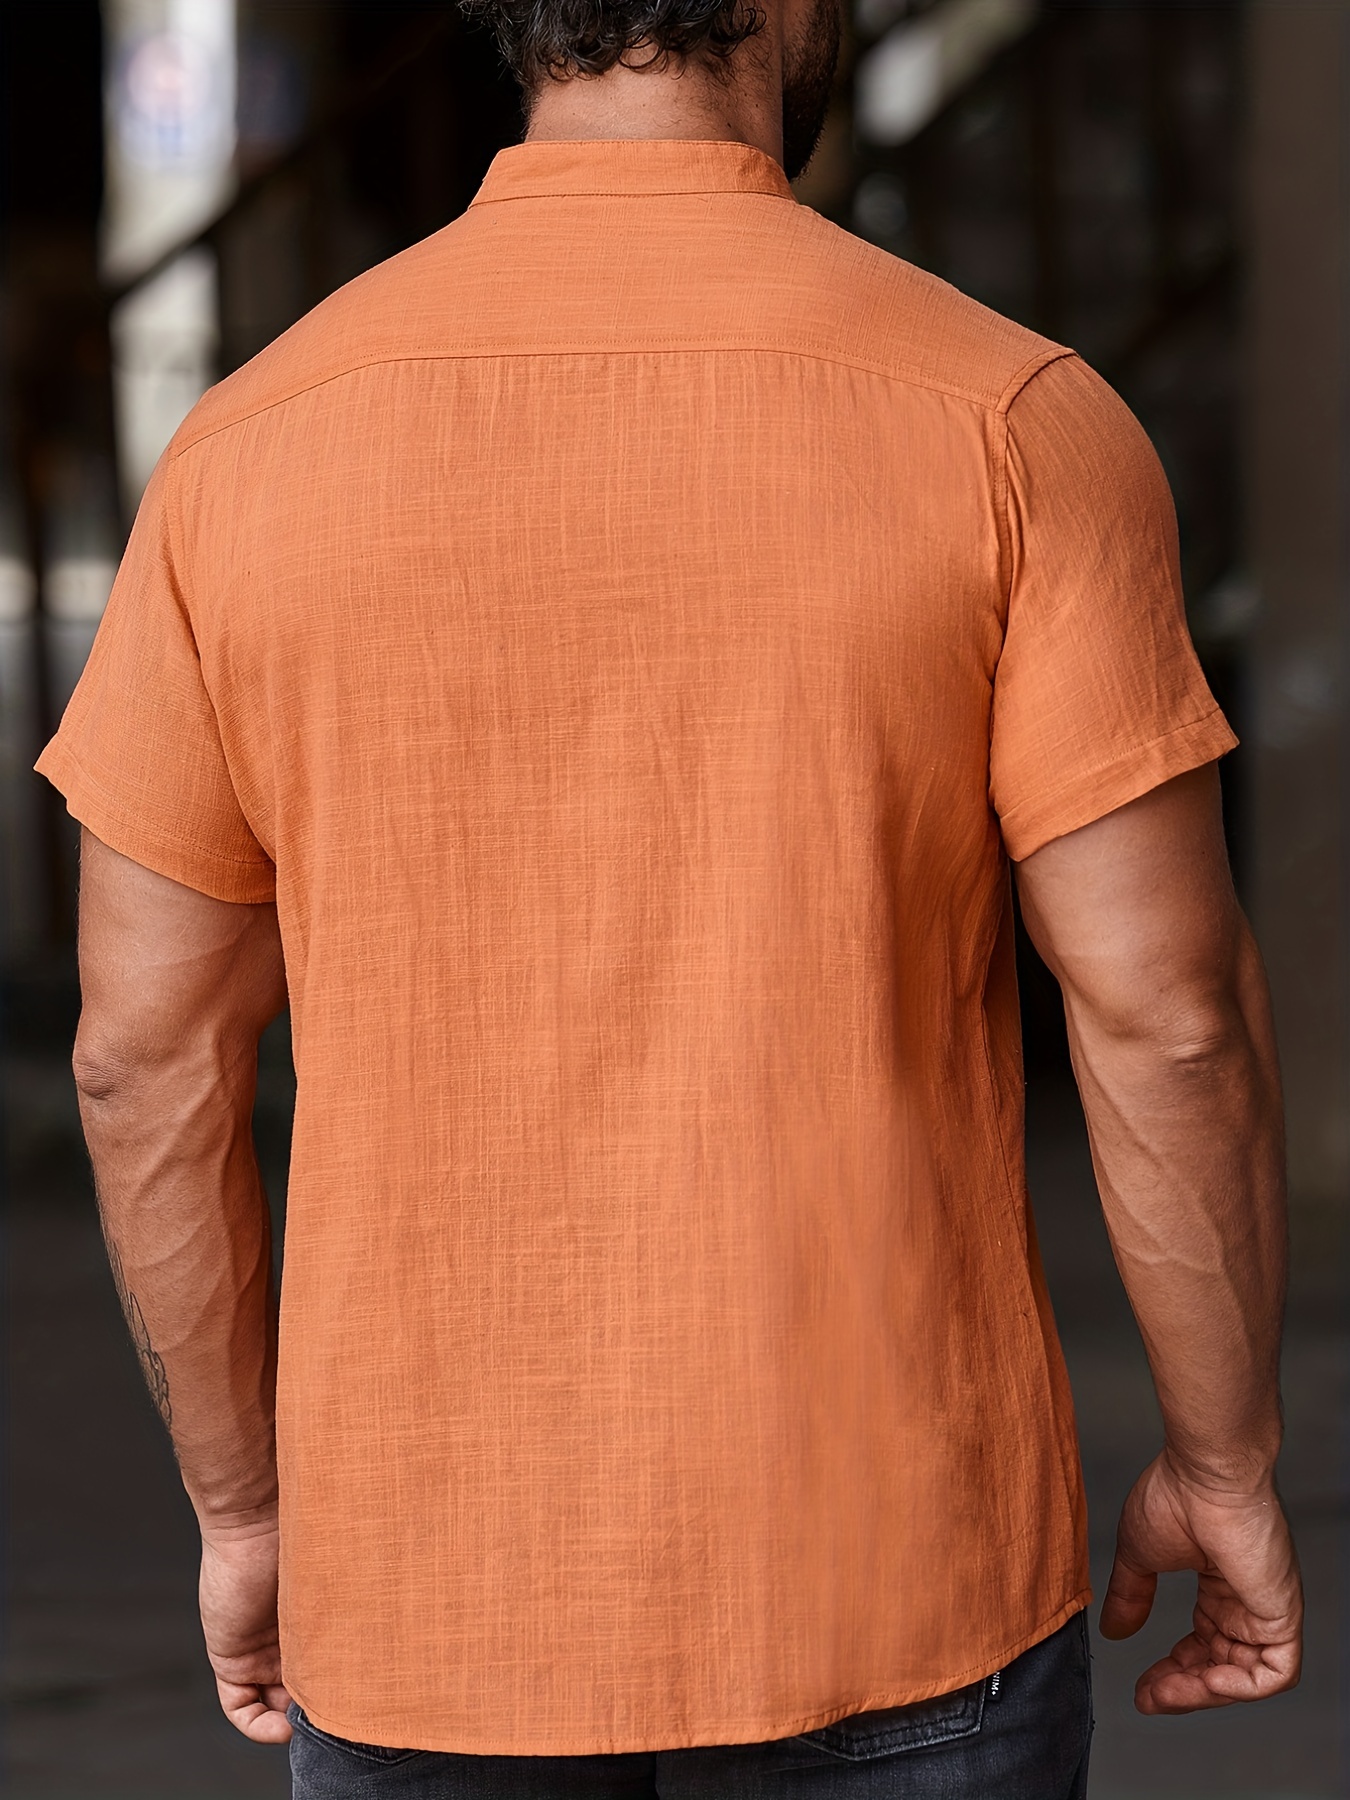 Las mejores ofertas en Camisas Naranja sin marca para hombres